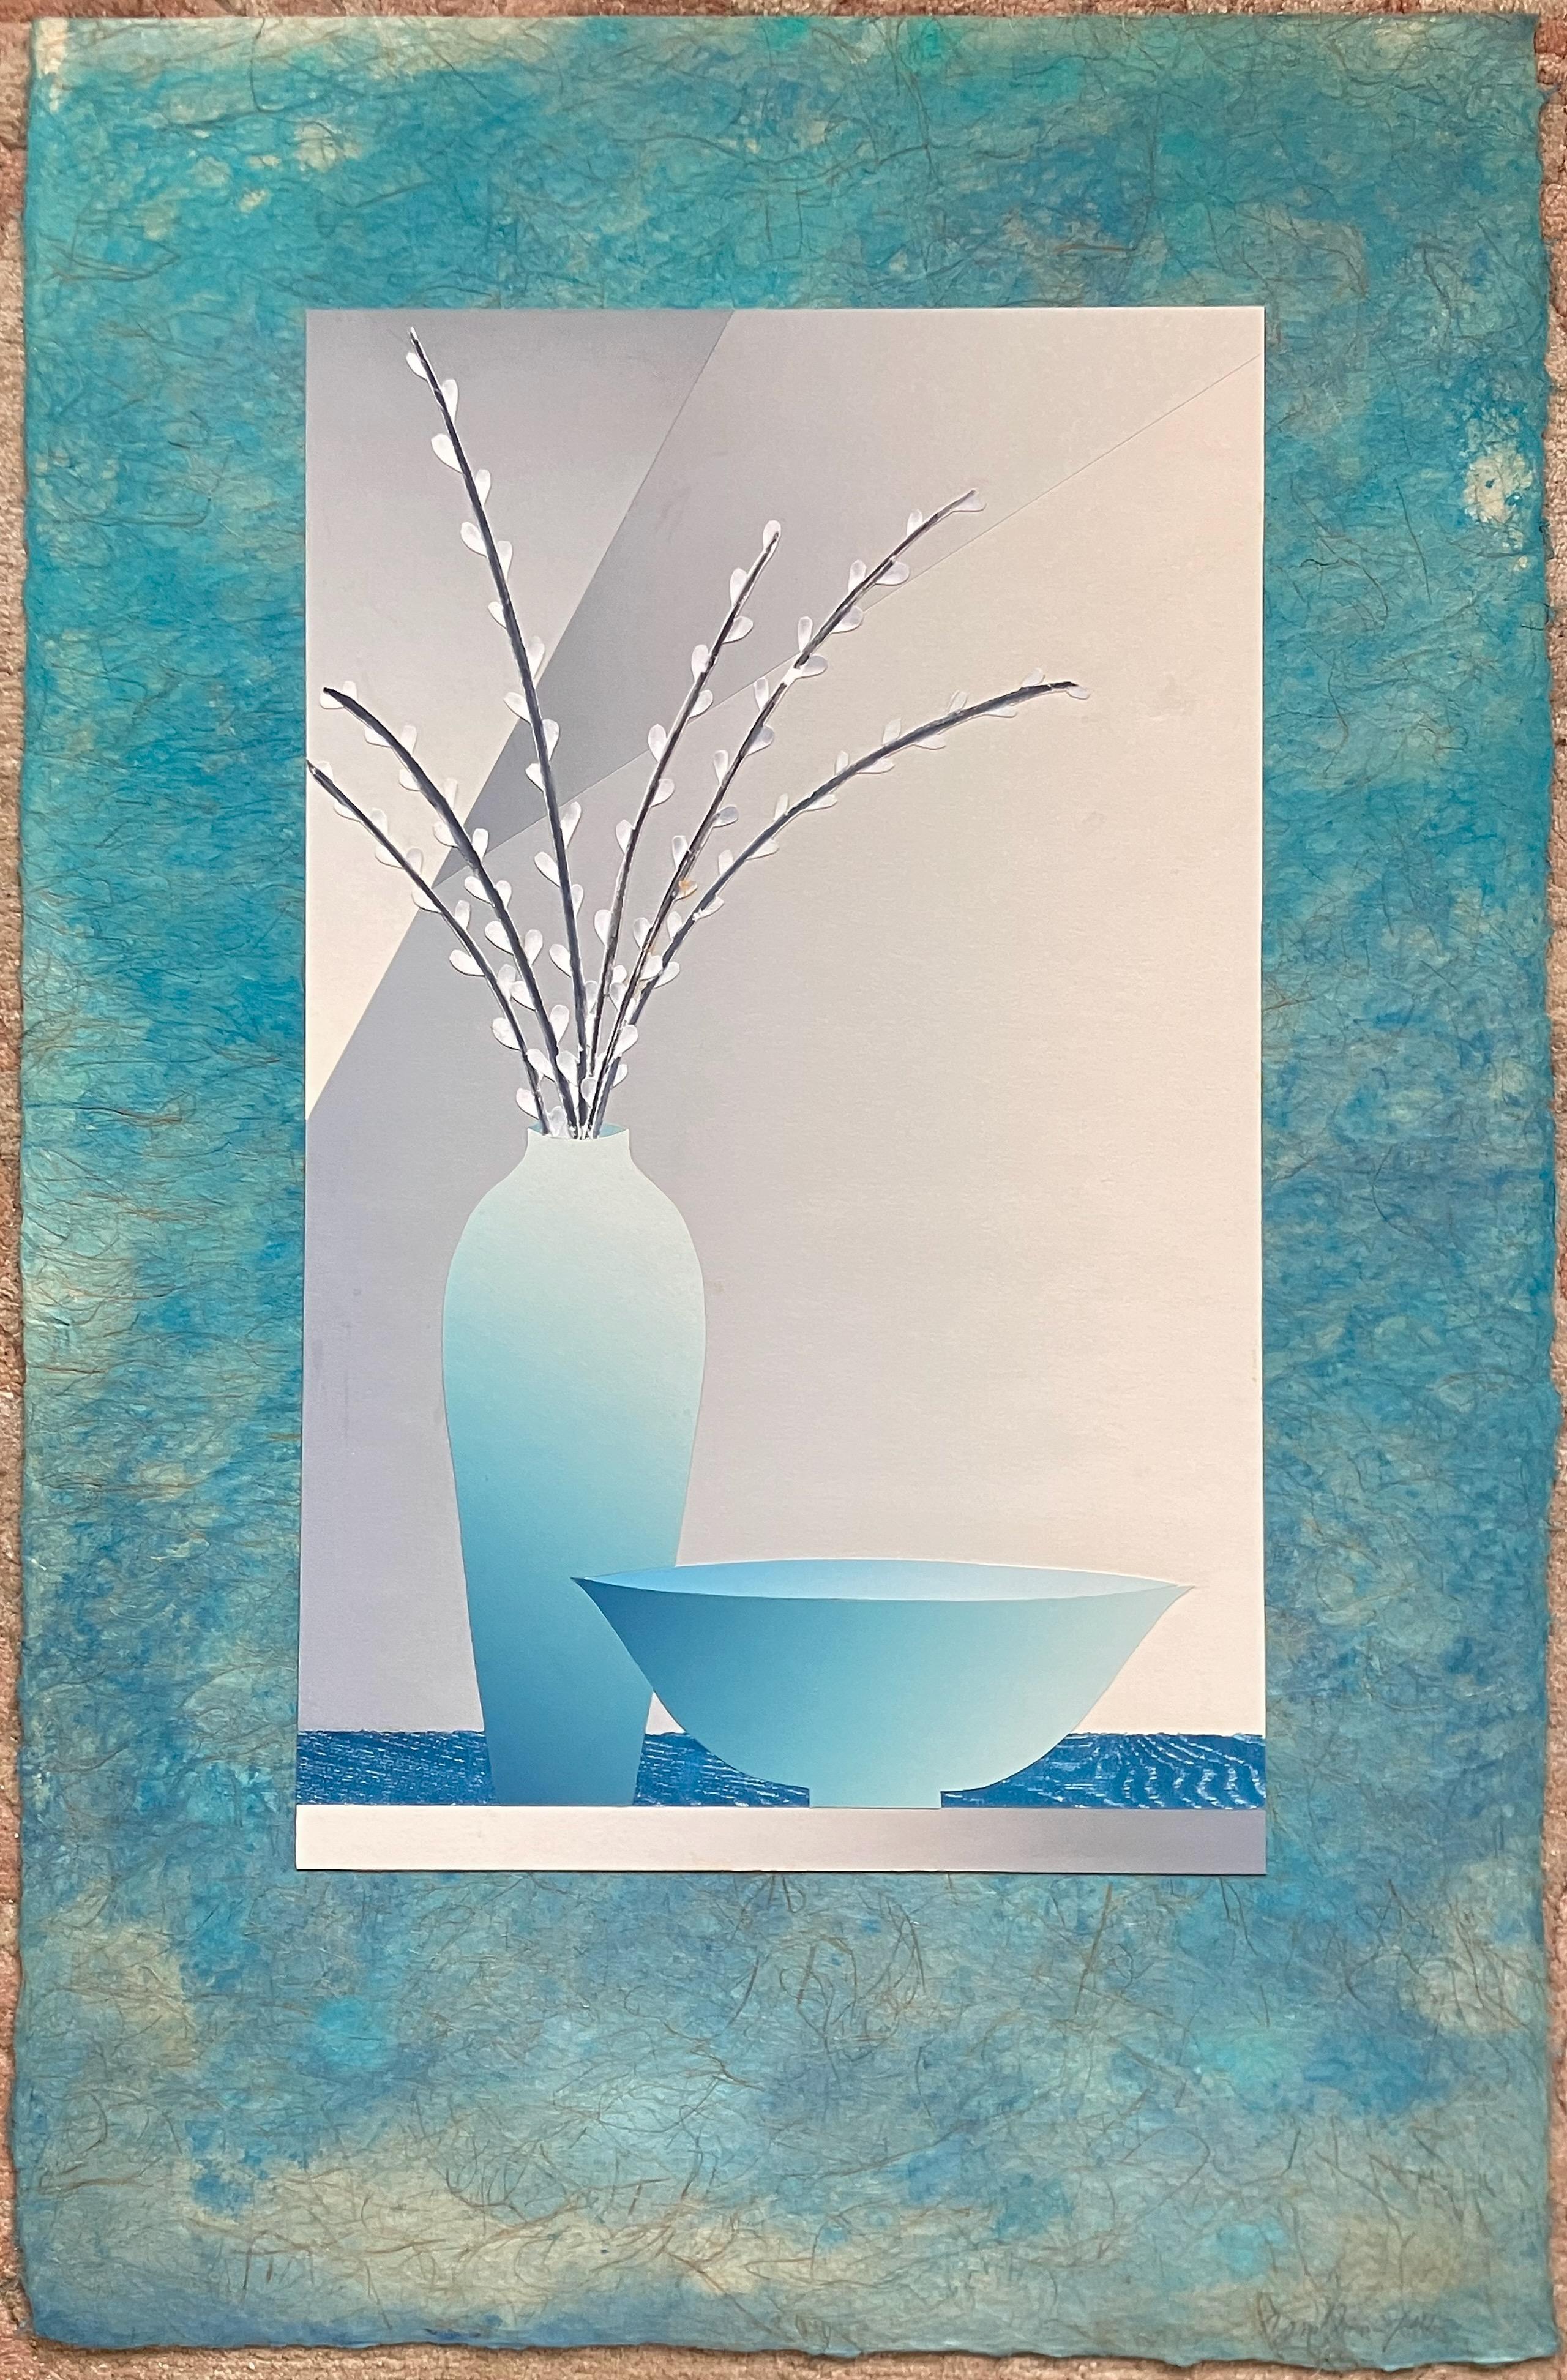 Willows in Vase - Still Life - Modern Mixed Media Art by Daniel Joshua Goldstein